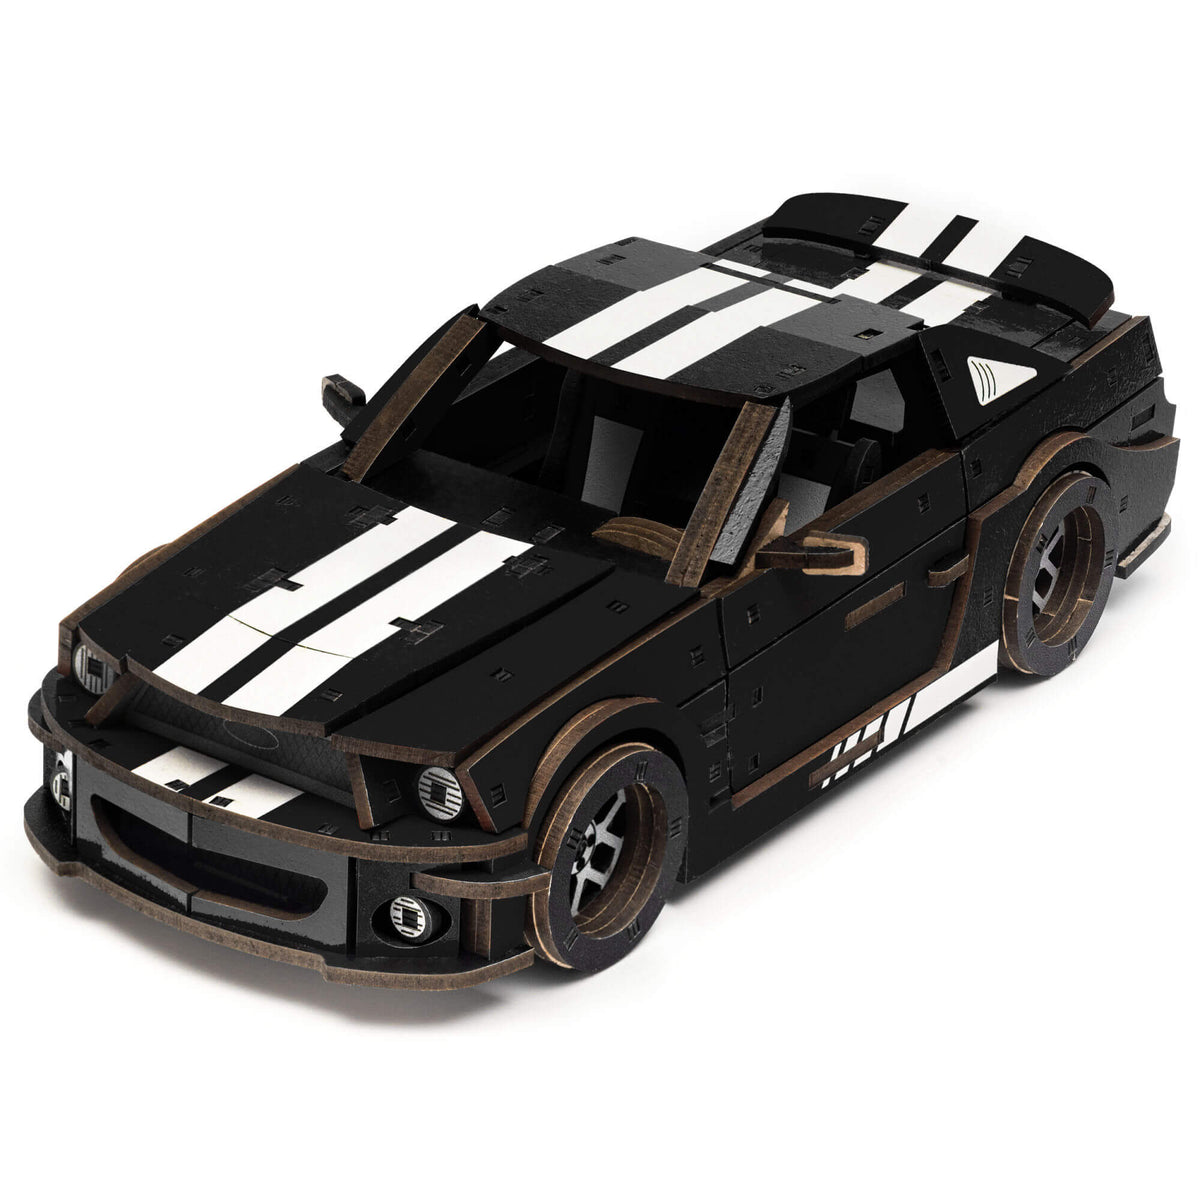 Stallion GT 3D Model Mechanical Wooden Puzzle-Unidragon-stallion-gt-black-4640157453760